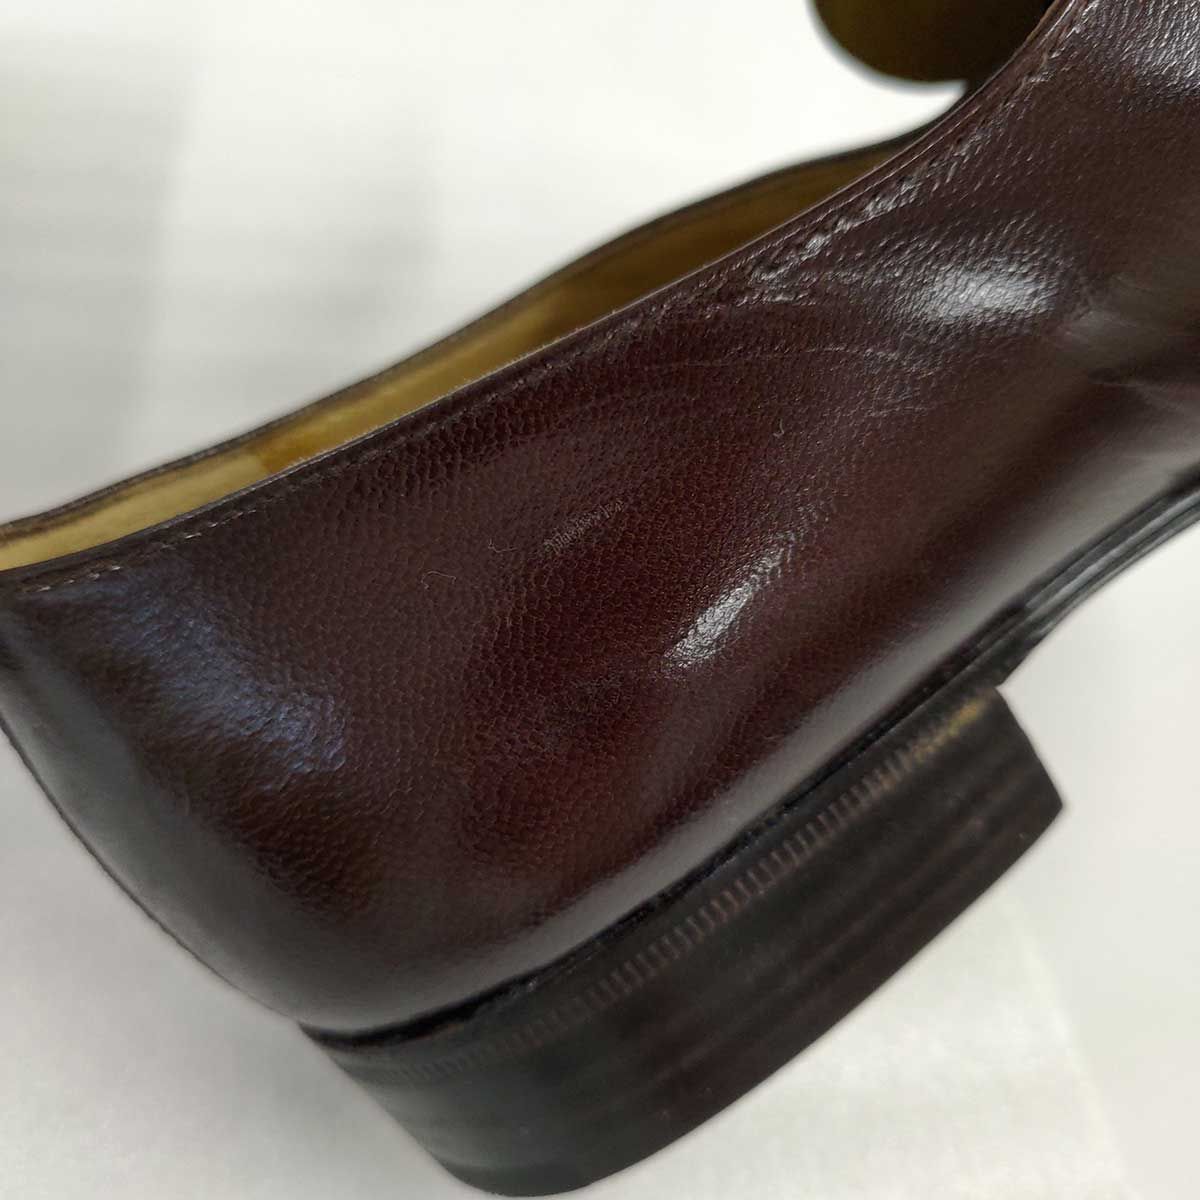 MORESCHI ローファー クロコダイル シューズ イタリア製 ドレスシューズ 革靴 6.5(24.5cm) ブラウン 20411 メンズ モレスキー